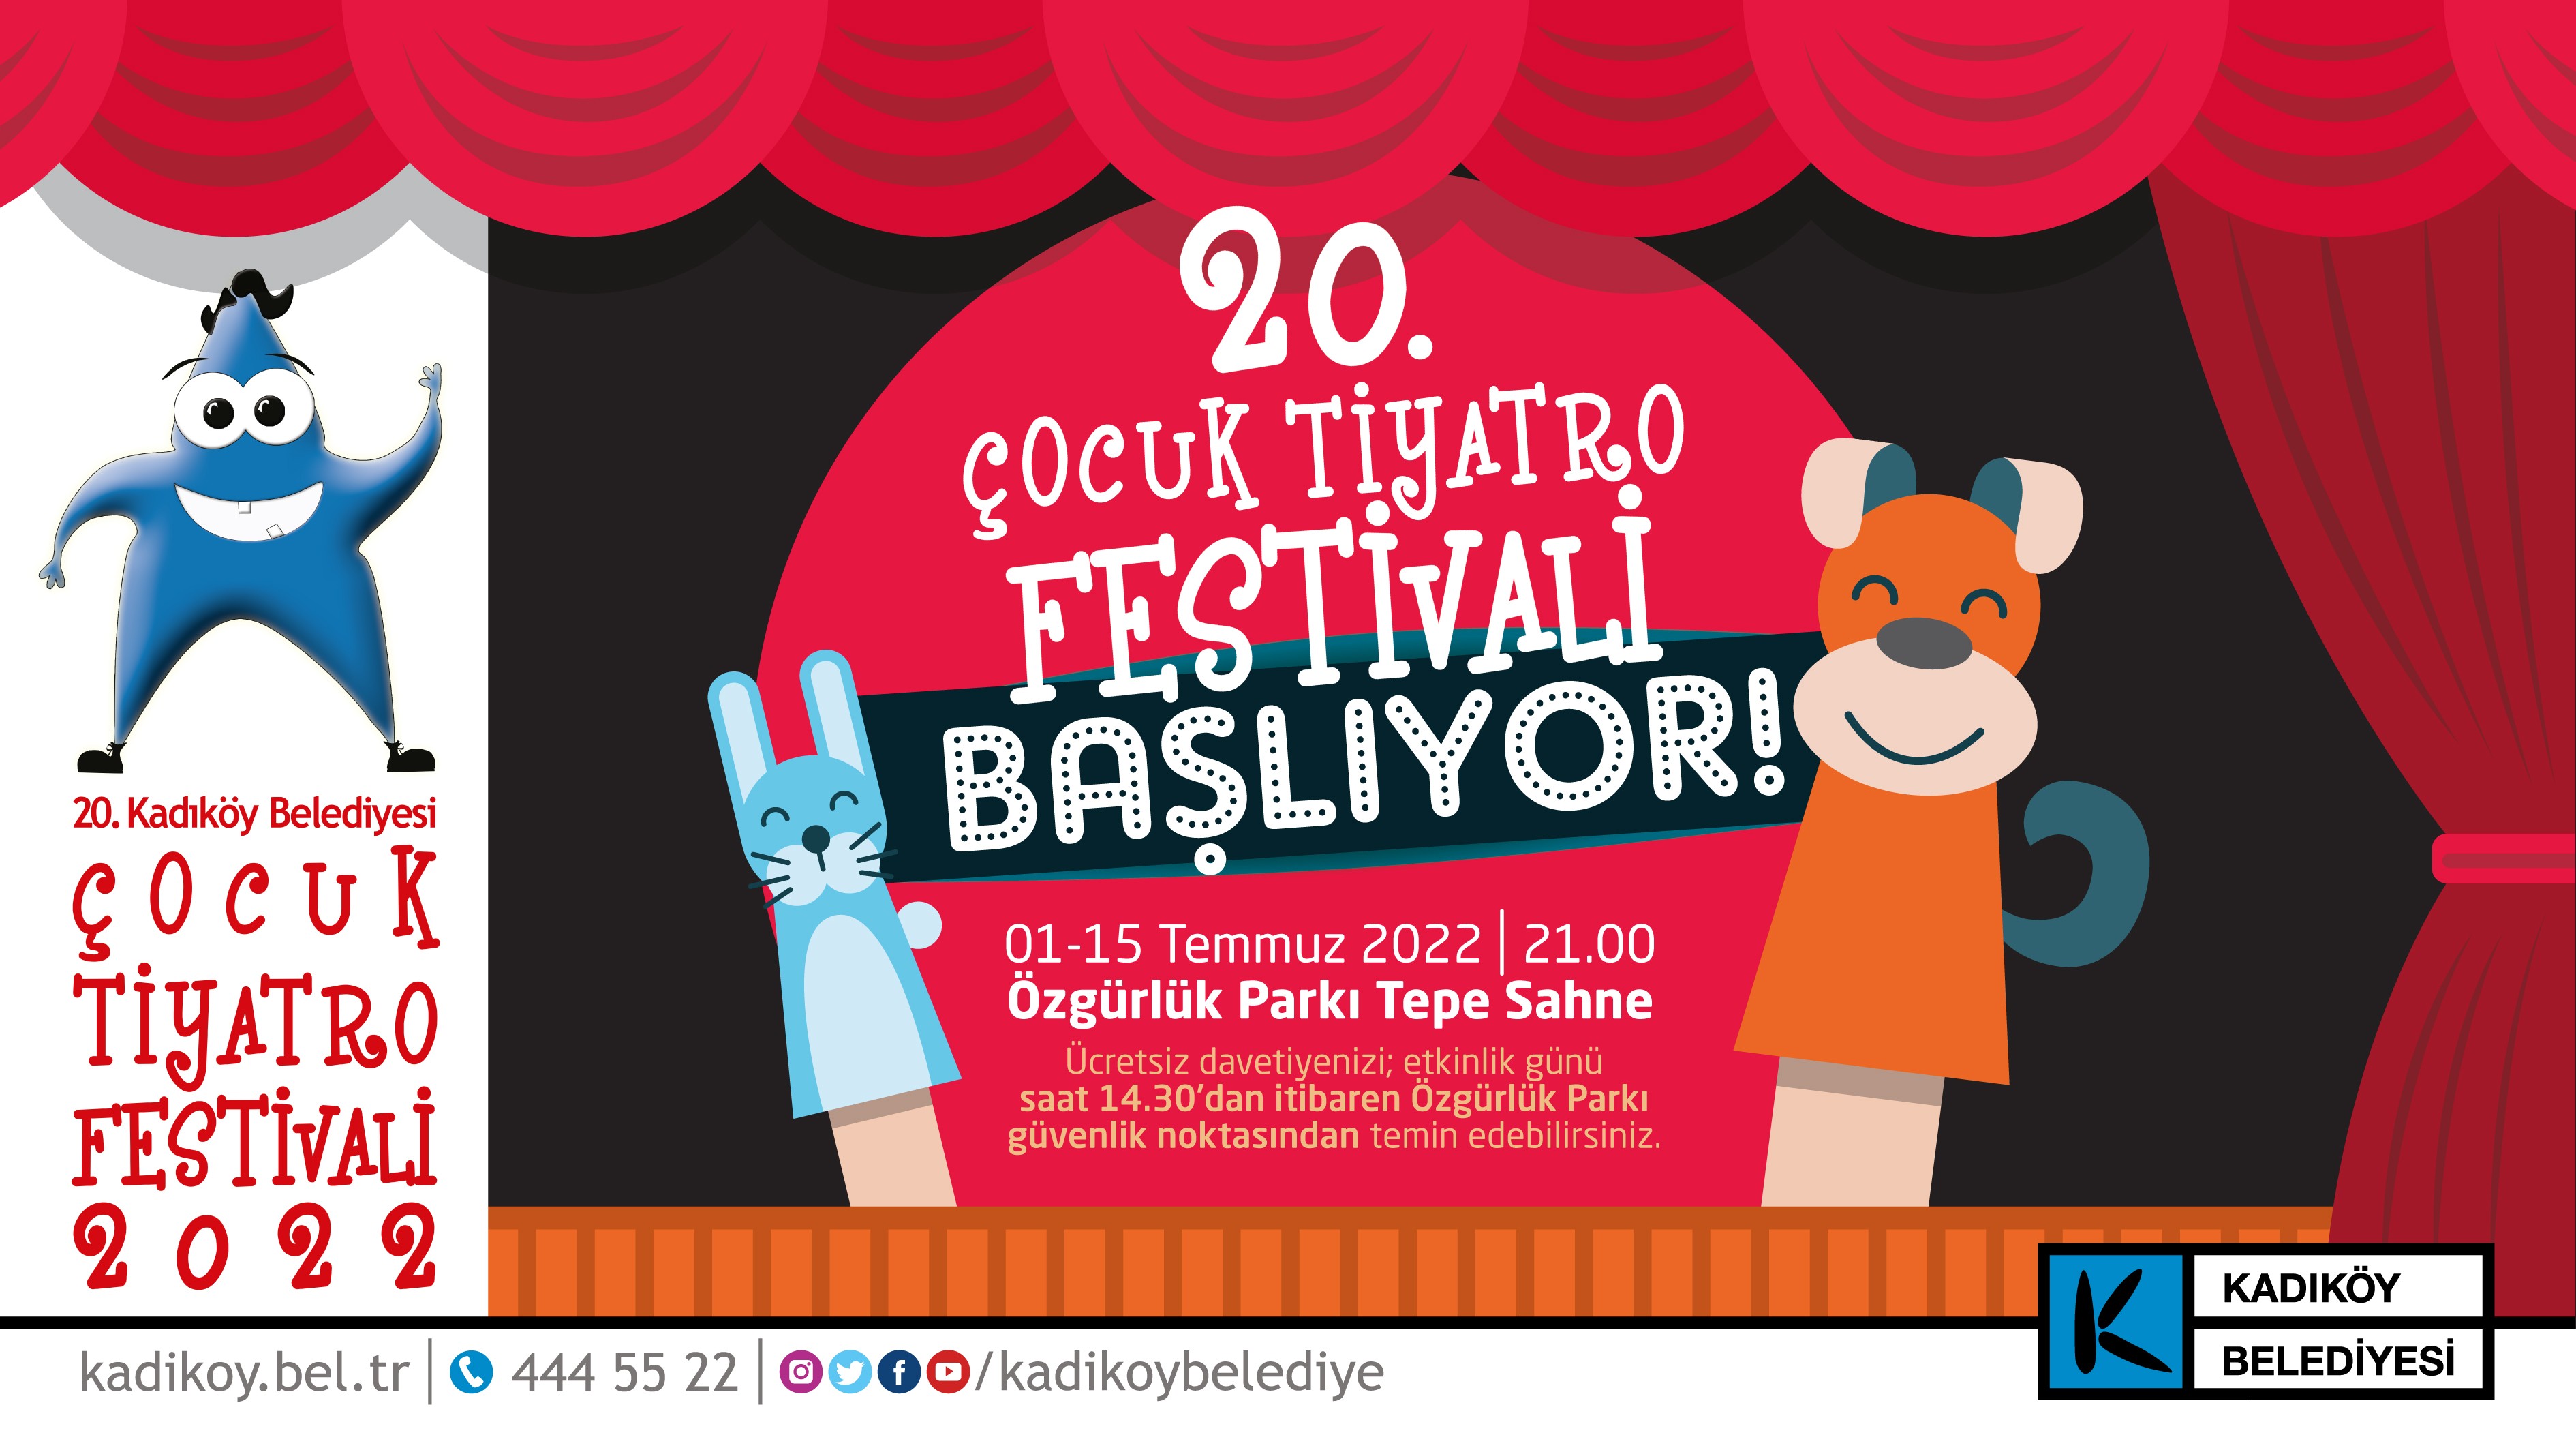 20.Kadıköy Çocuk Tiyatro Festivali 1 Temmuz’da başlıyor